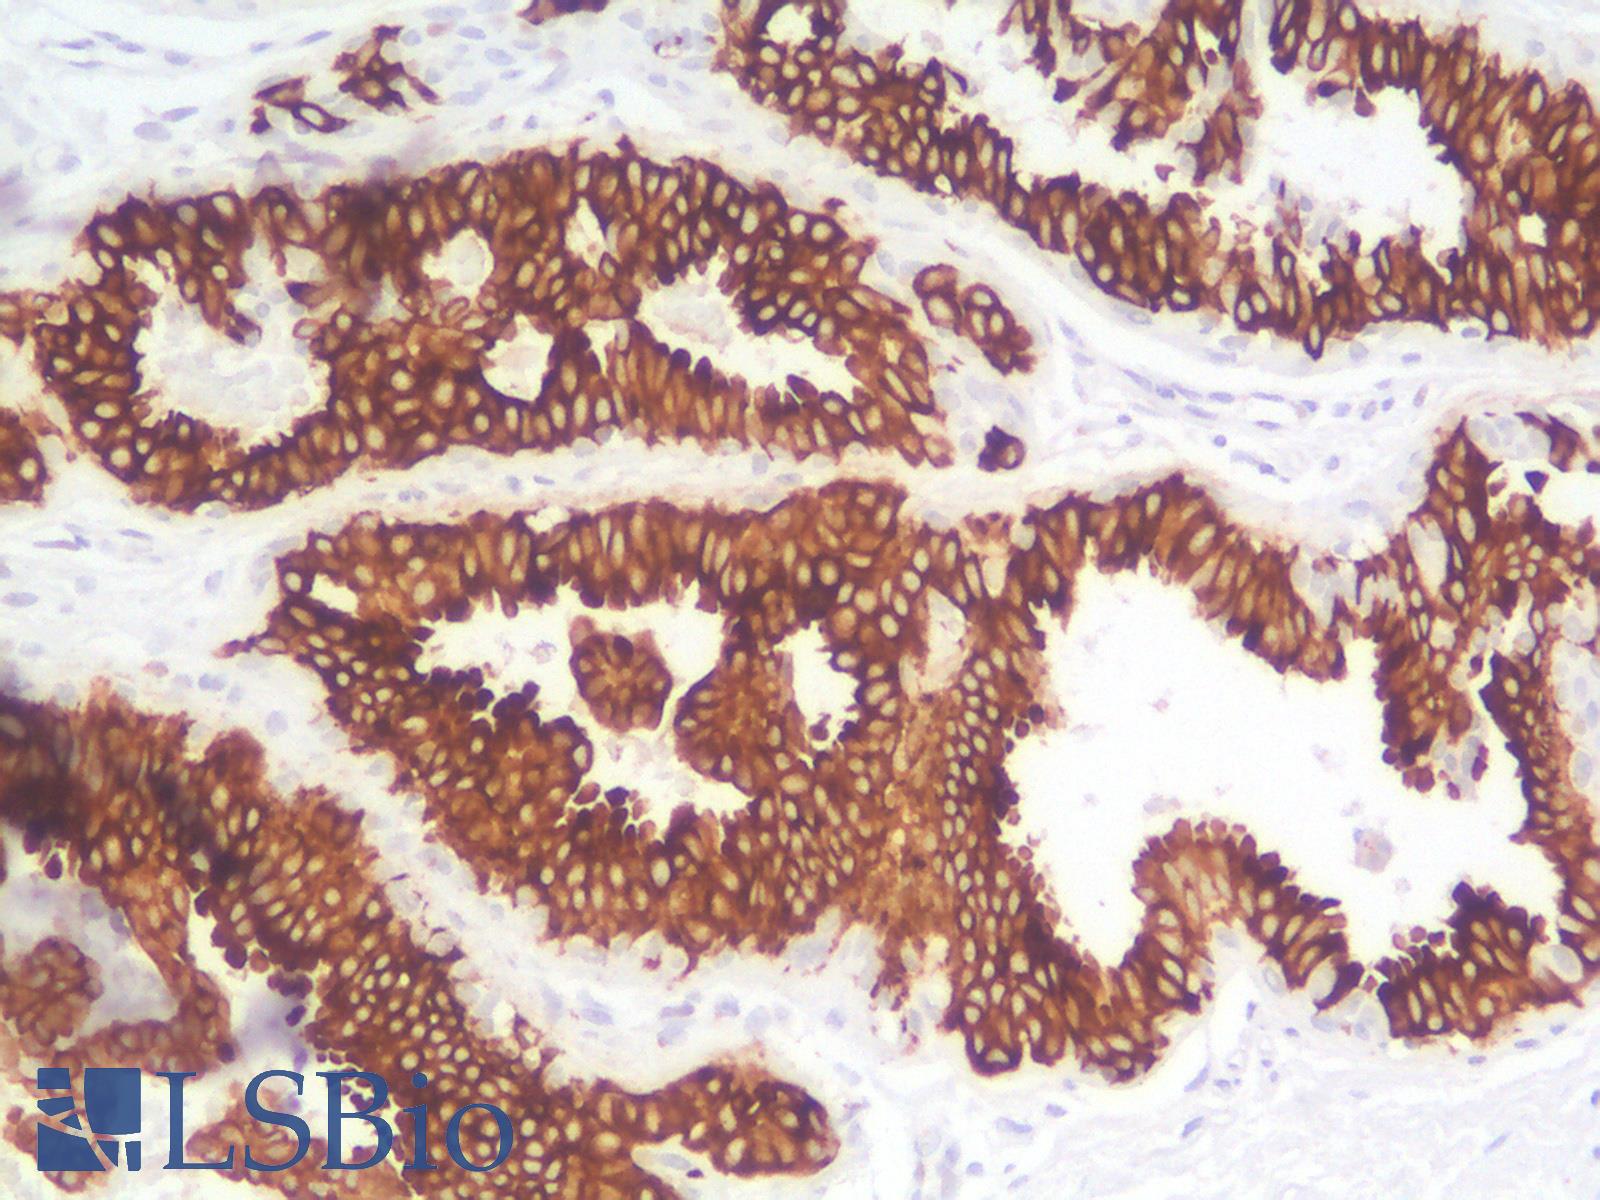 KRT19 / CK19 / Cytokeratin 19 Antibody - Human Breast: Formalin-Fixed, Paraffin-Embedded (FFPE)